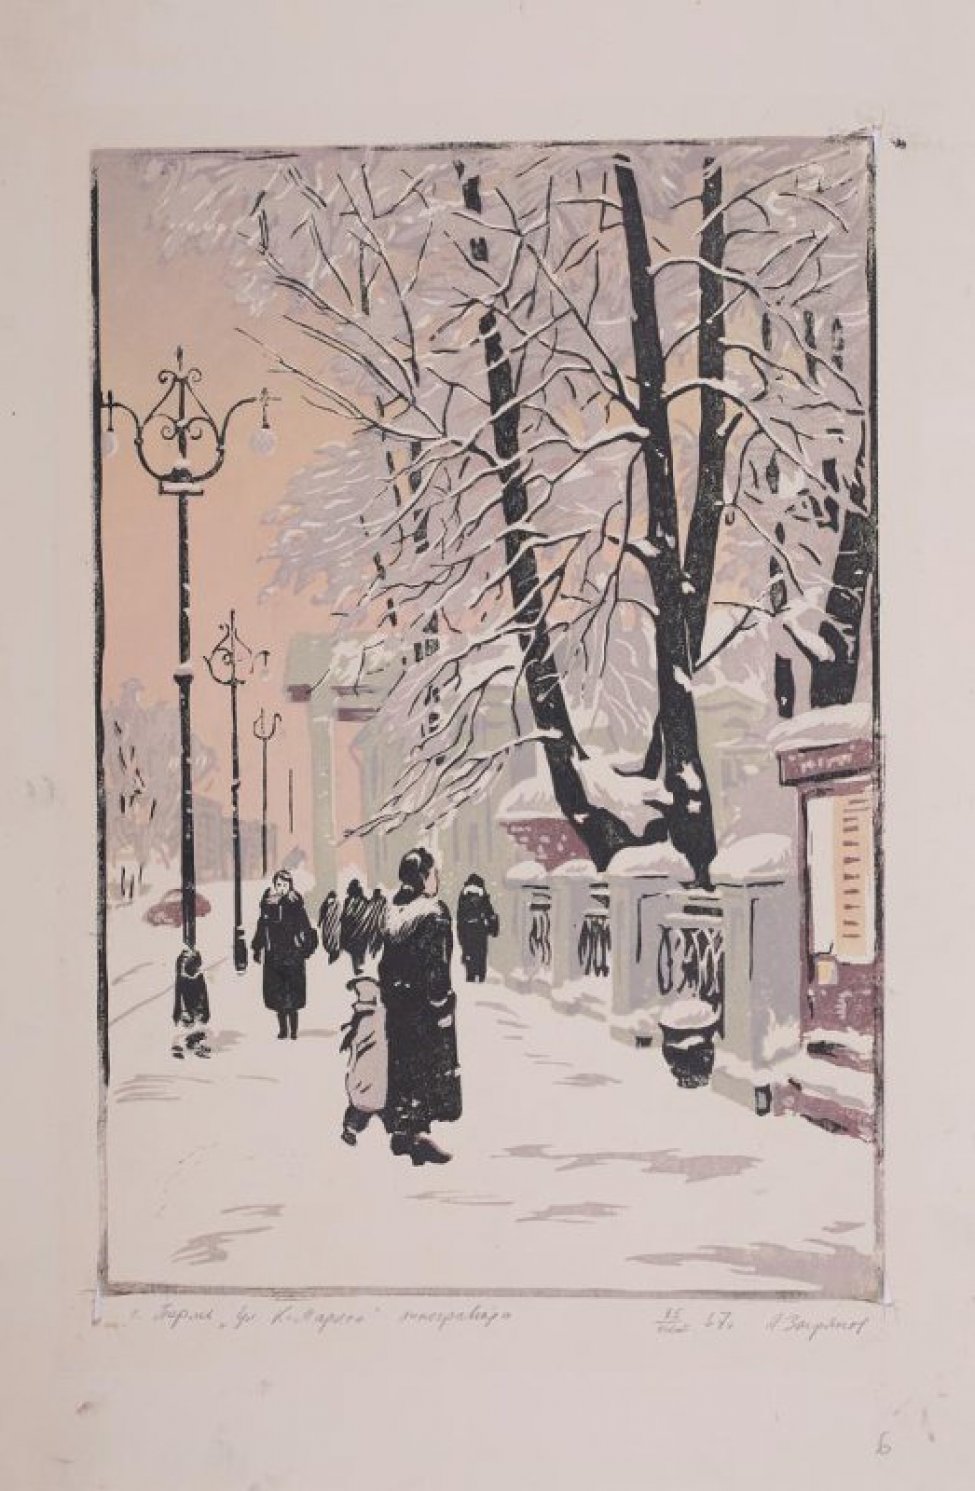 Изображен зимний вид улицы, уходящей в глубину; на тротуаре - фигуры людей, за решеткой справа - деревья, запущенные снегом. Слева от тротуаров - фонари уличного освещения.